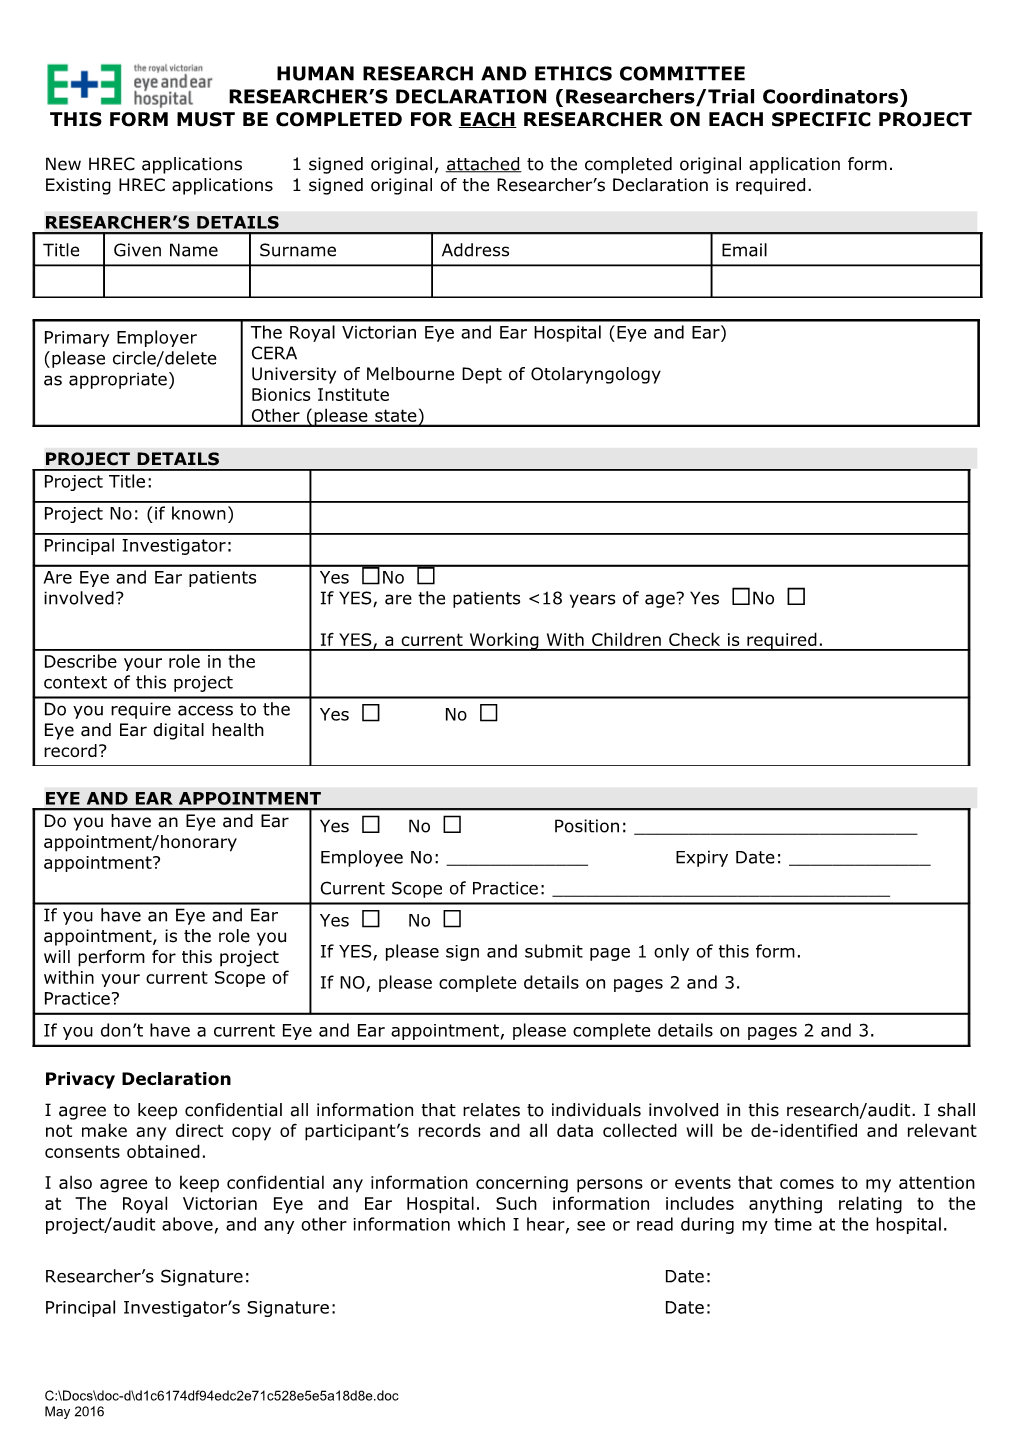 APPENDIX 1 Pjoect Personnel Detail Form